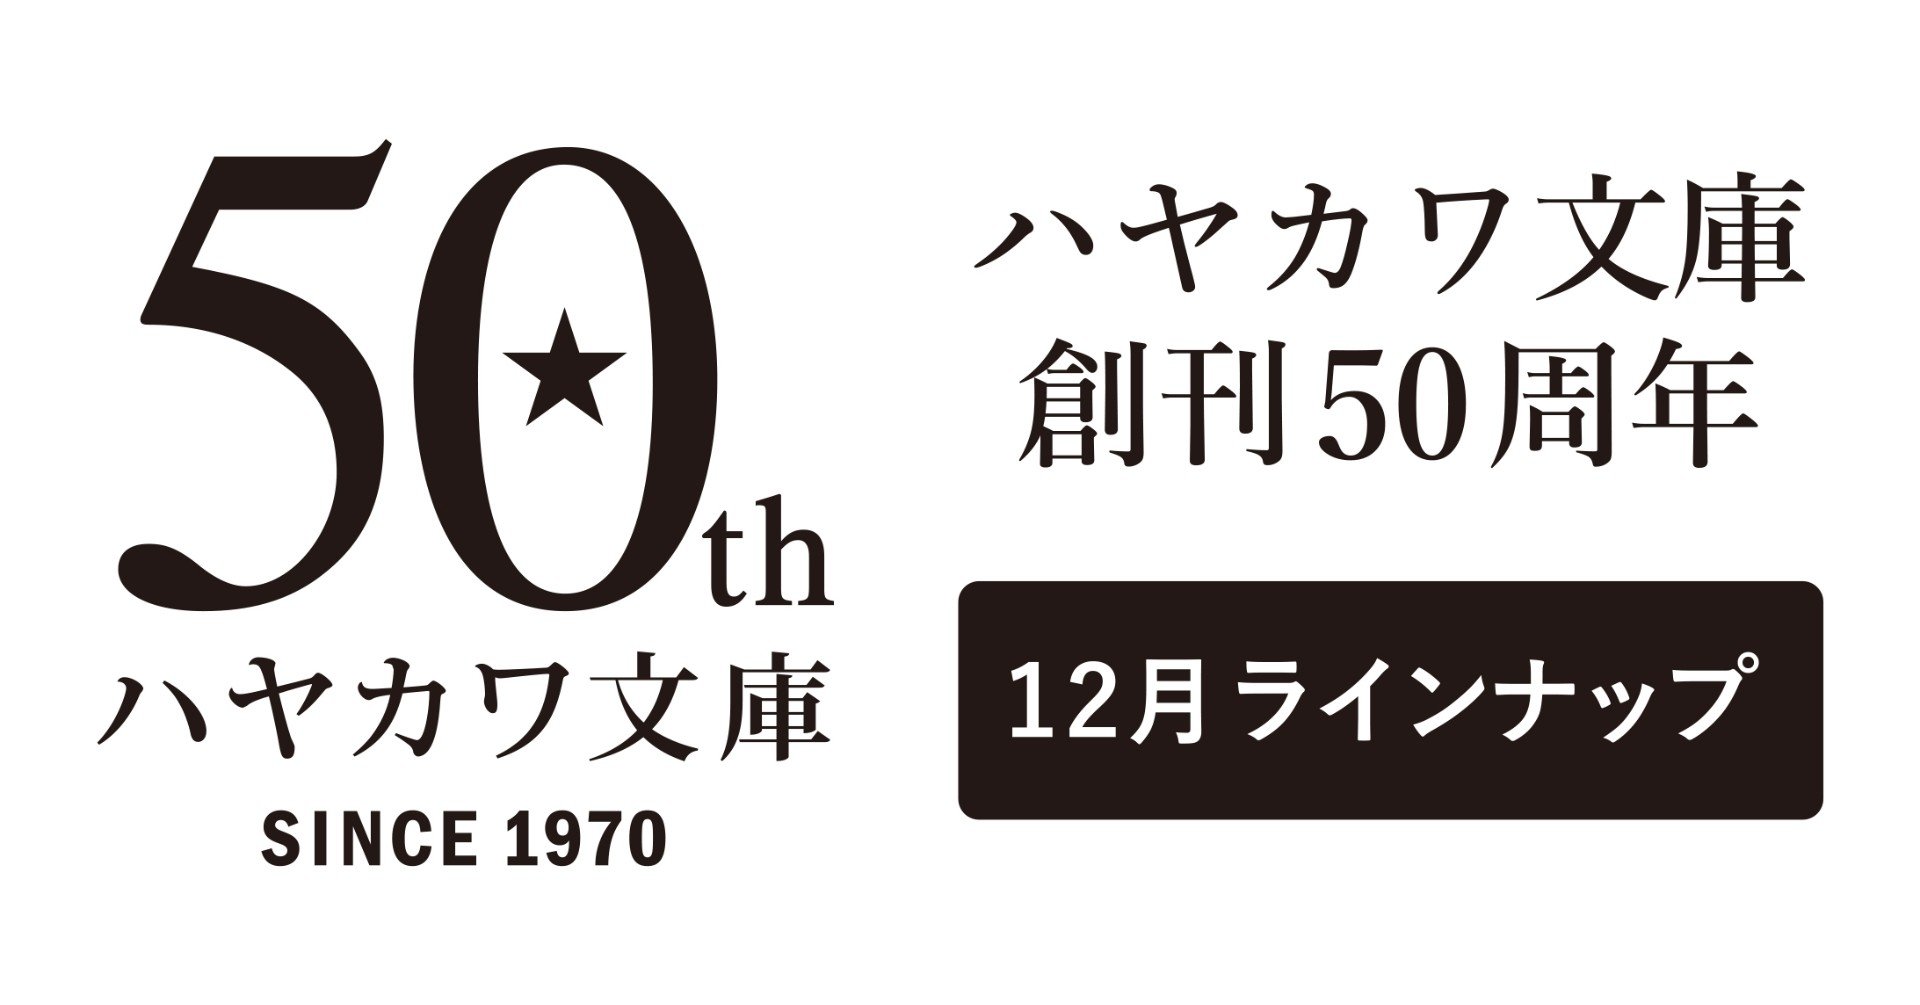 ハヤカワ文庫創刊50周年記念イヤー 12月のラインナップ Hayakawa Books Magazines B